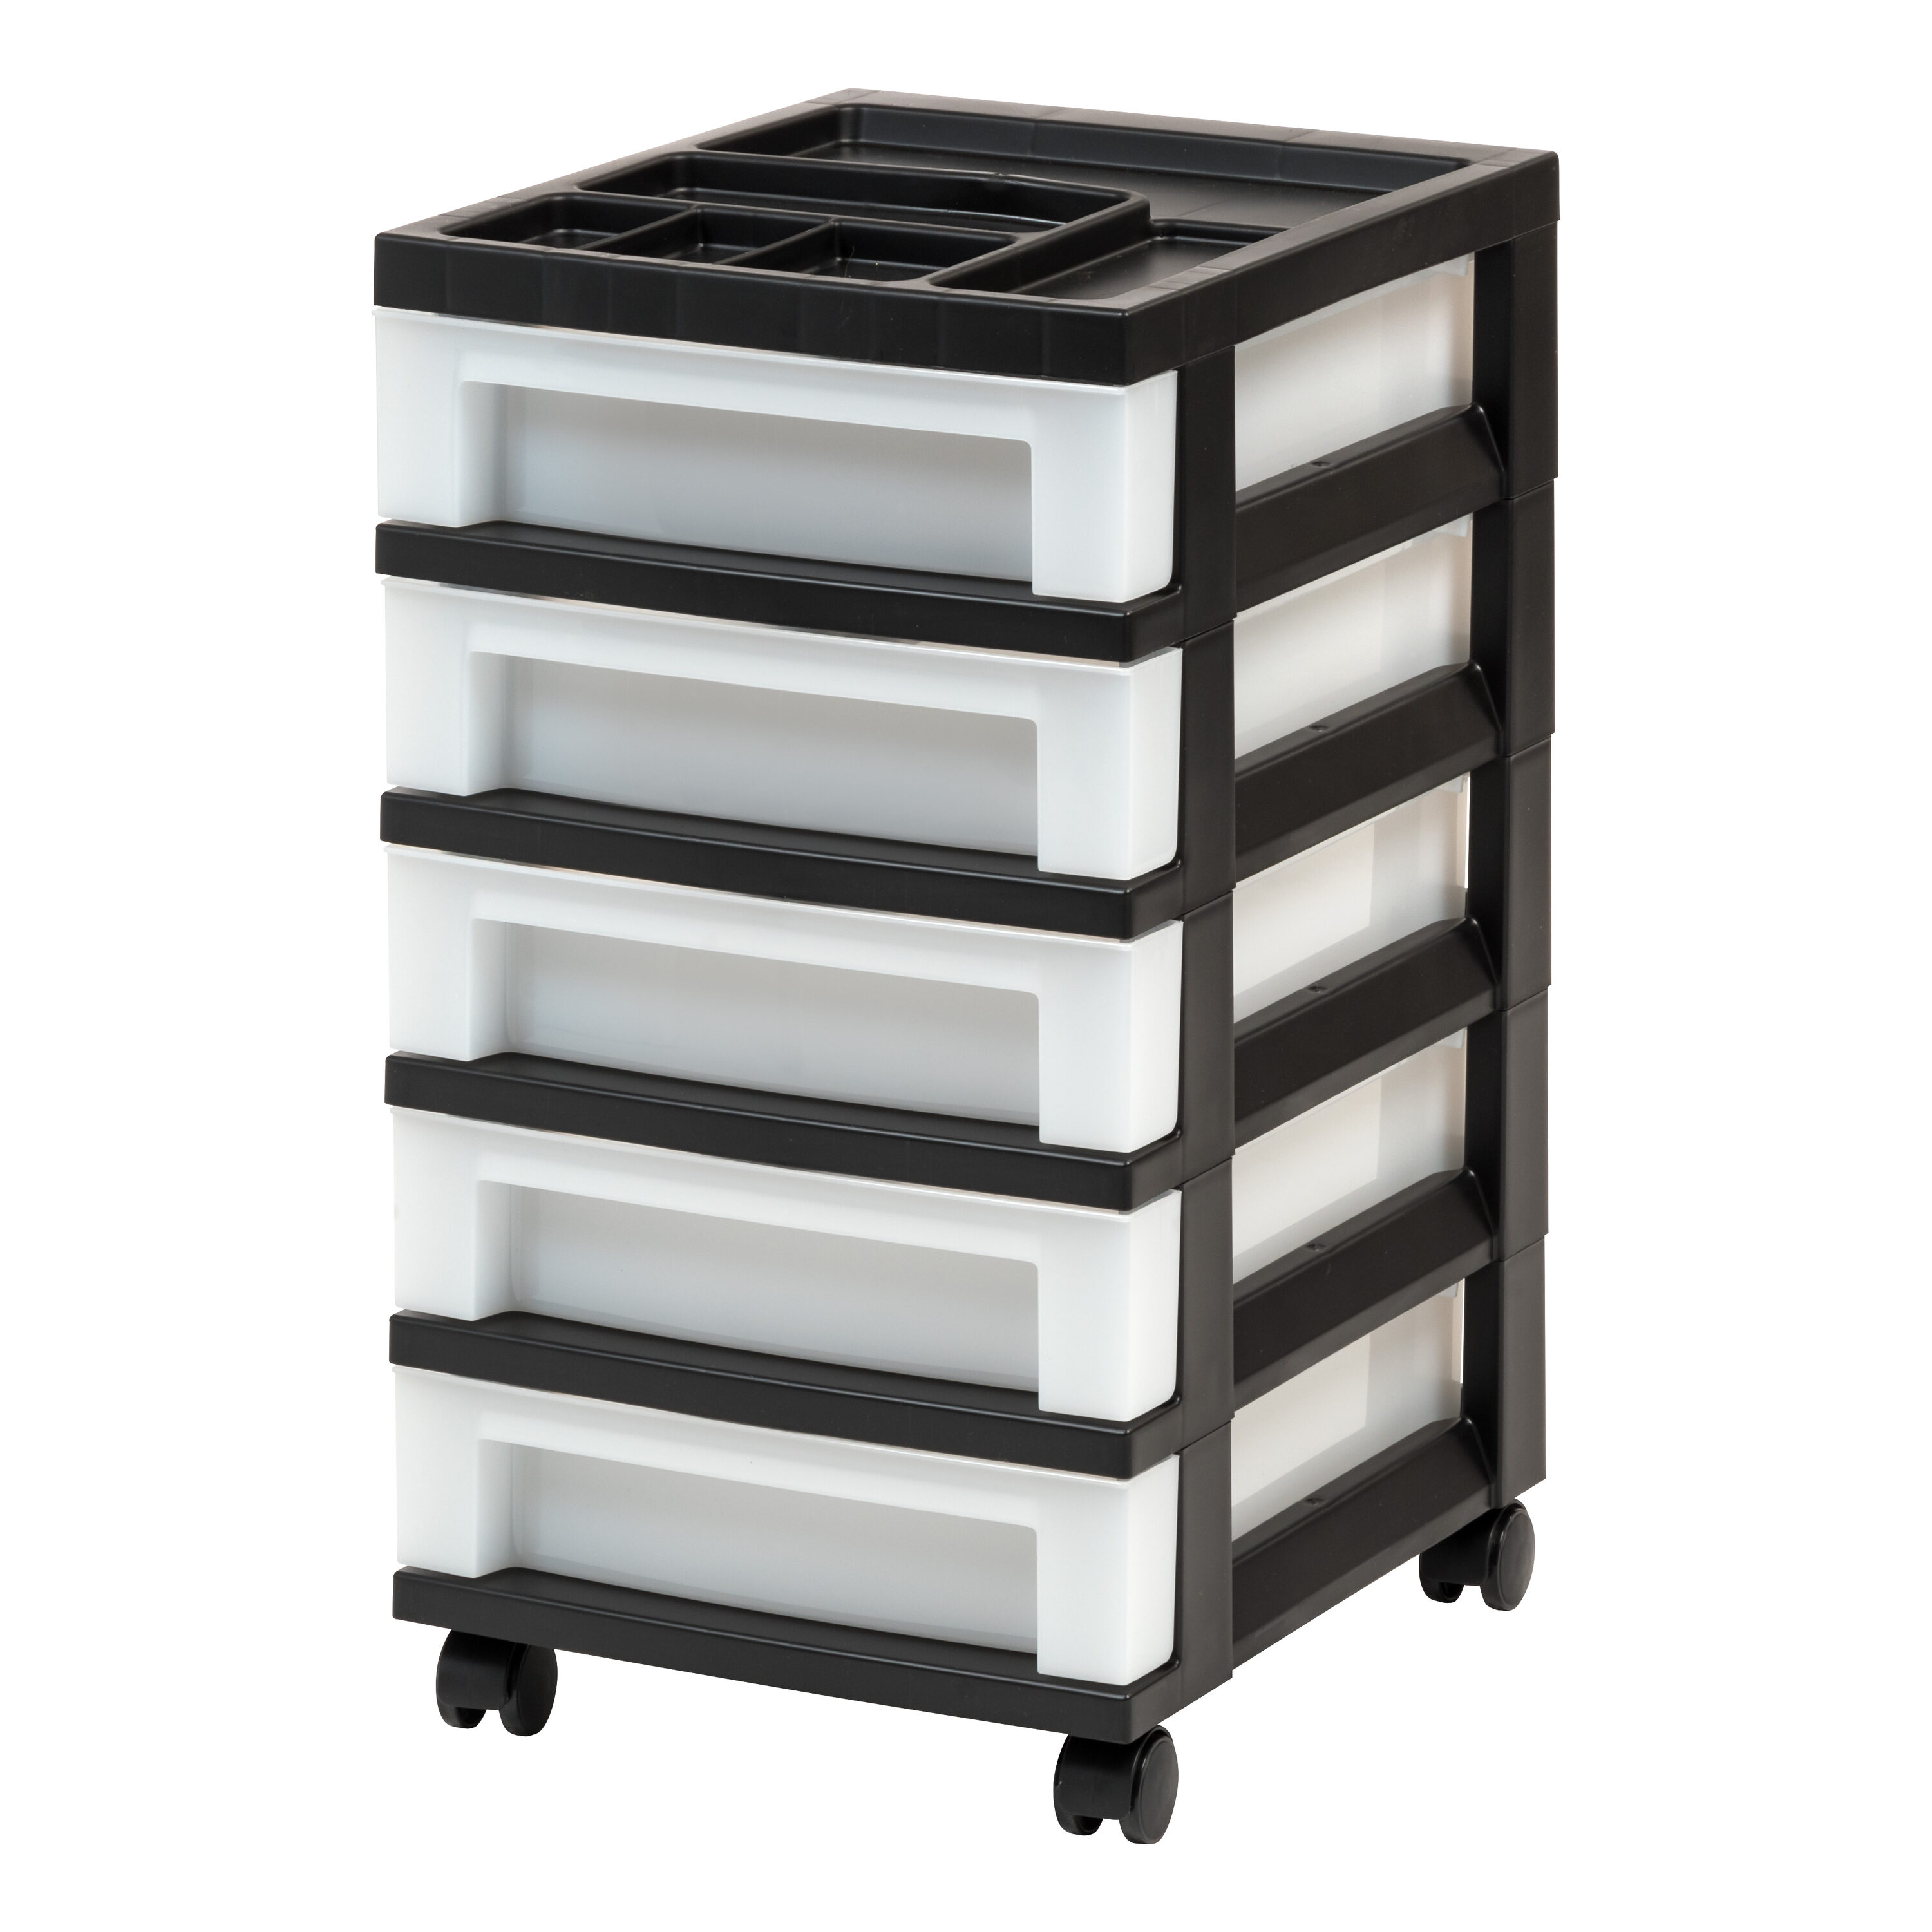 Iris 5 Drawer Storage Cart with Organizer Top Black